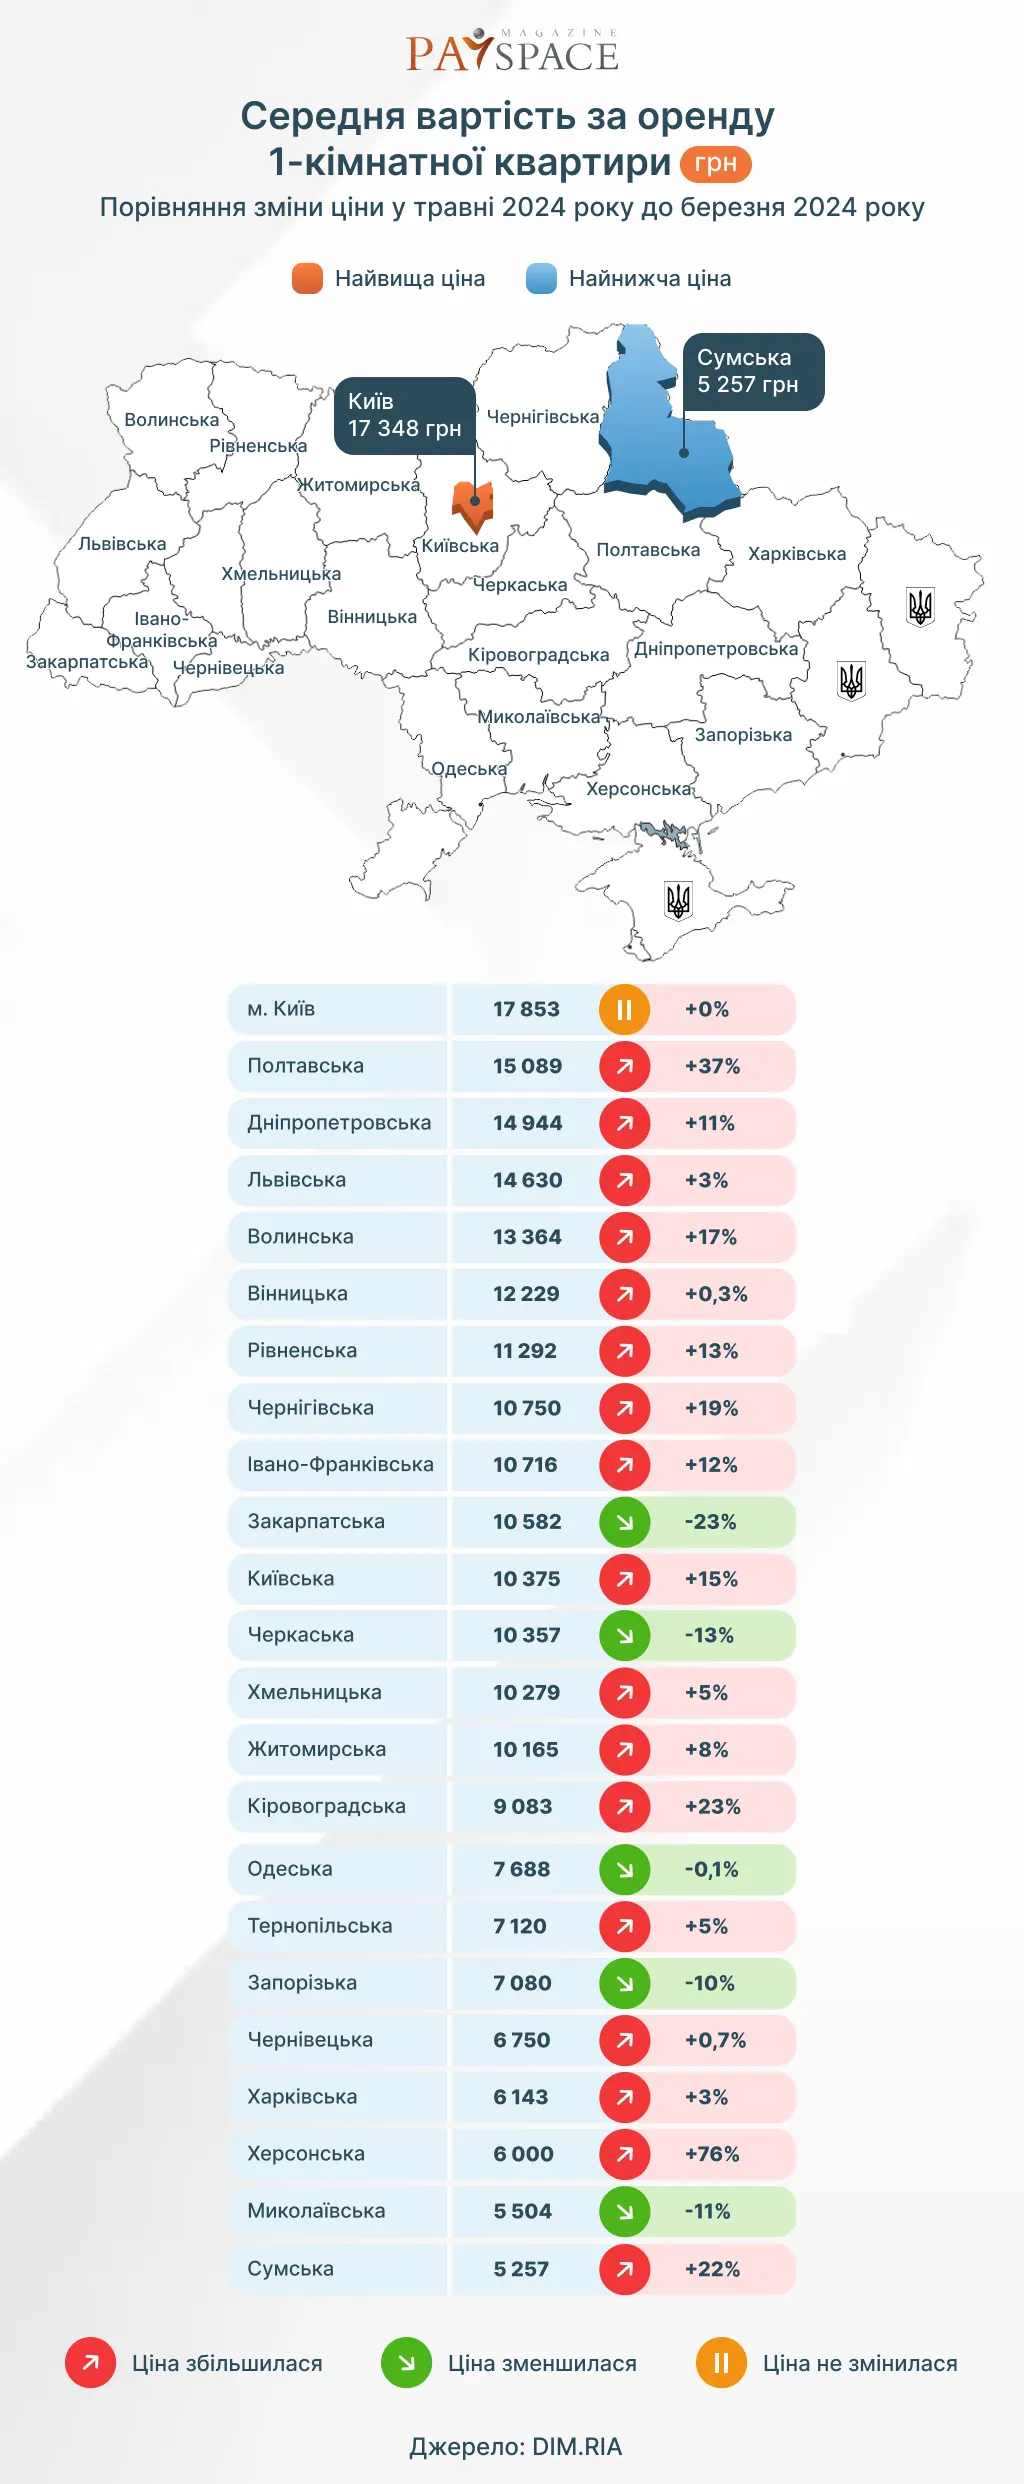 Где в Украине дешевле и дороже всего арендовать жилье — исследование Dim.ria